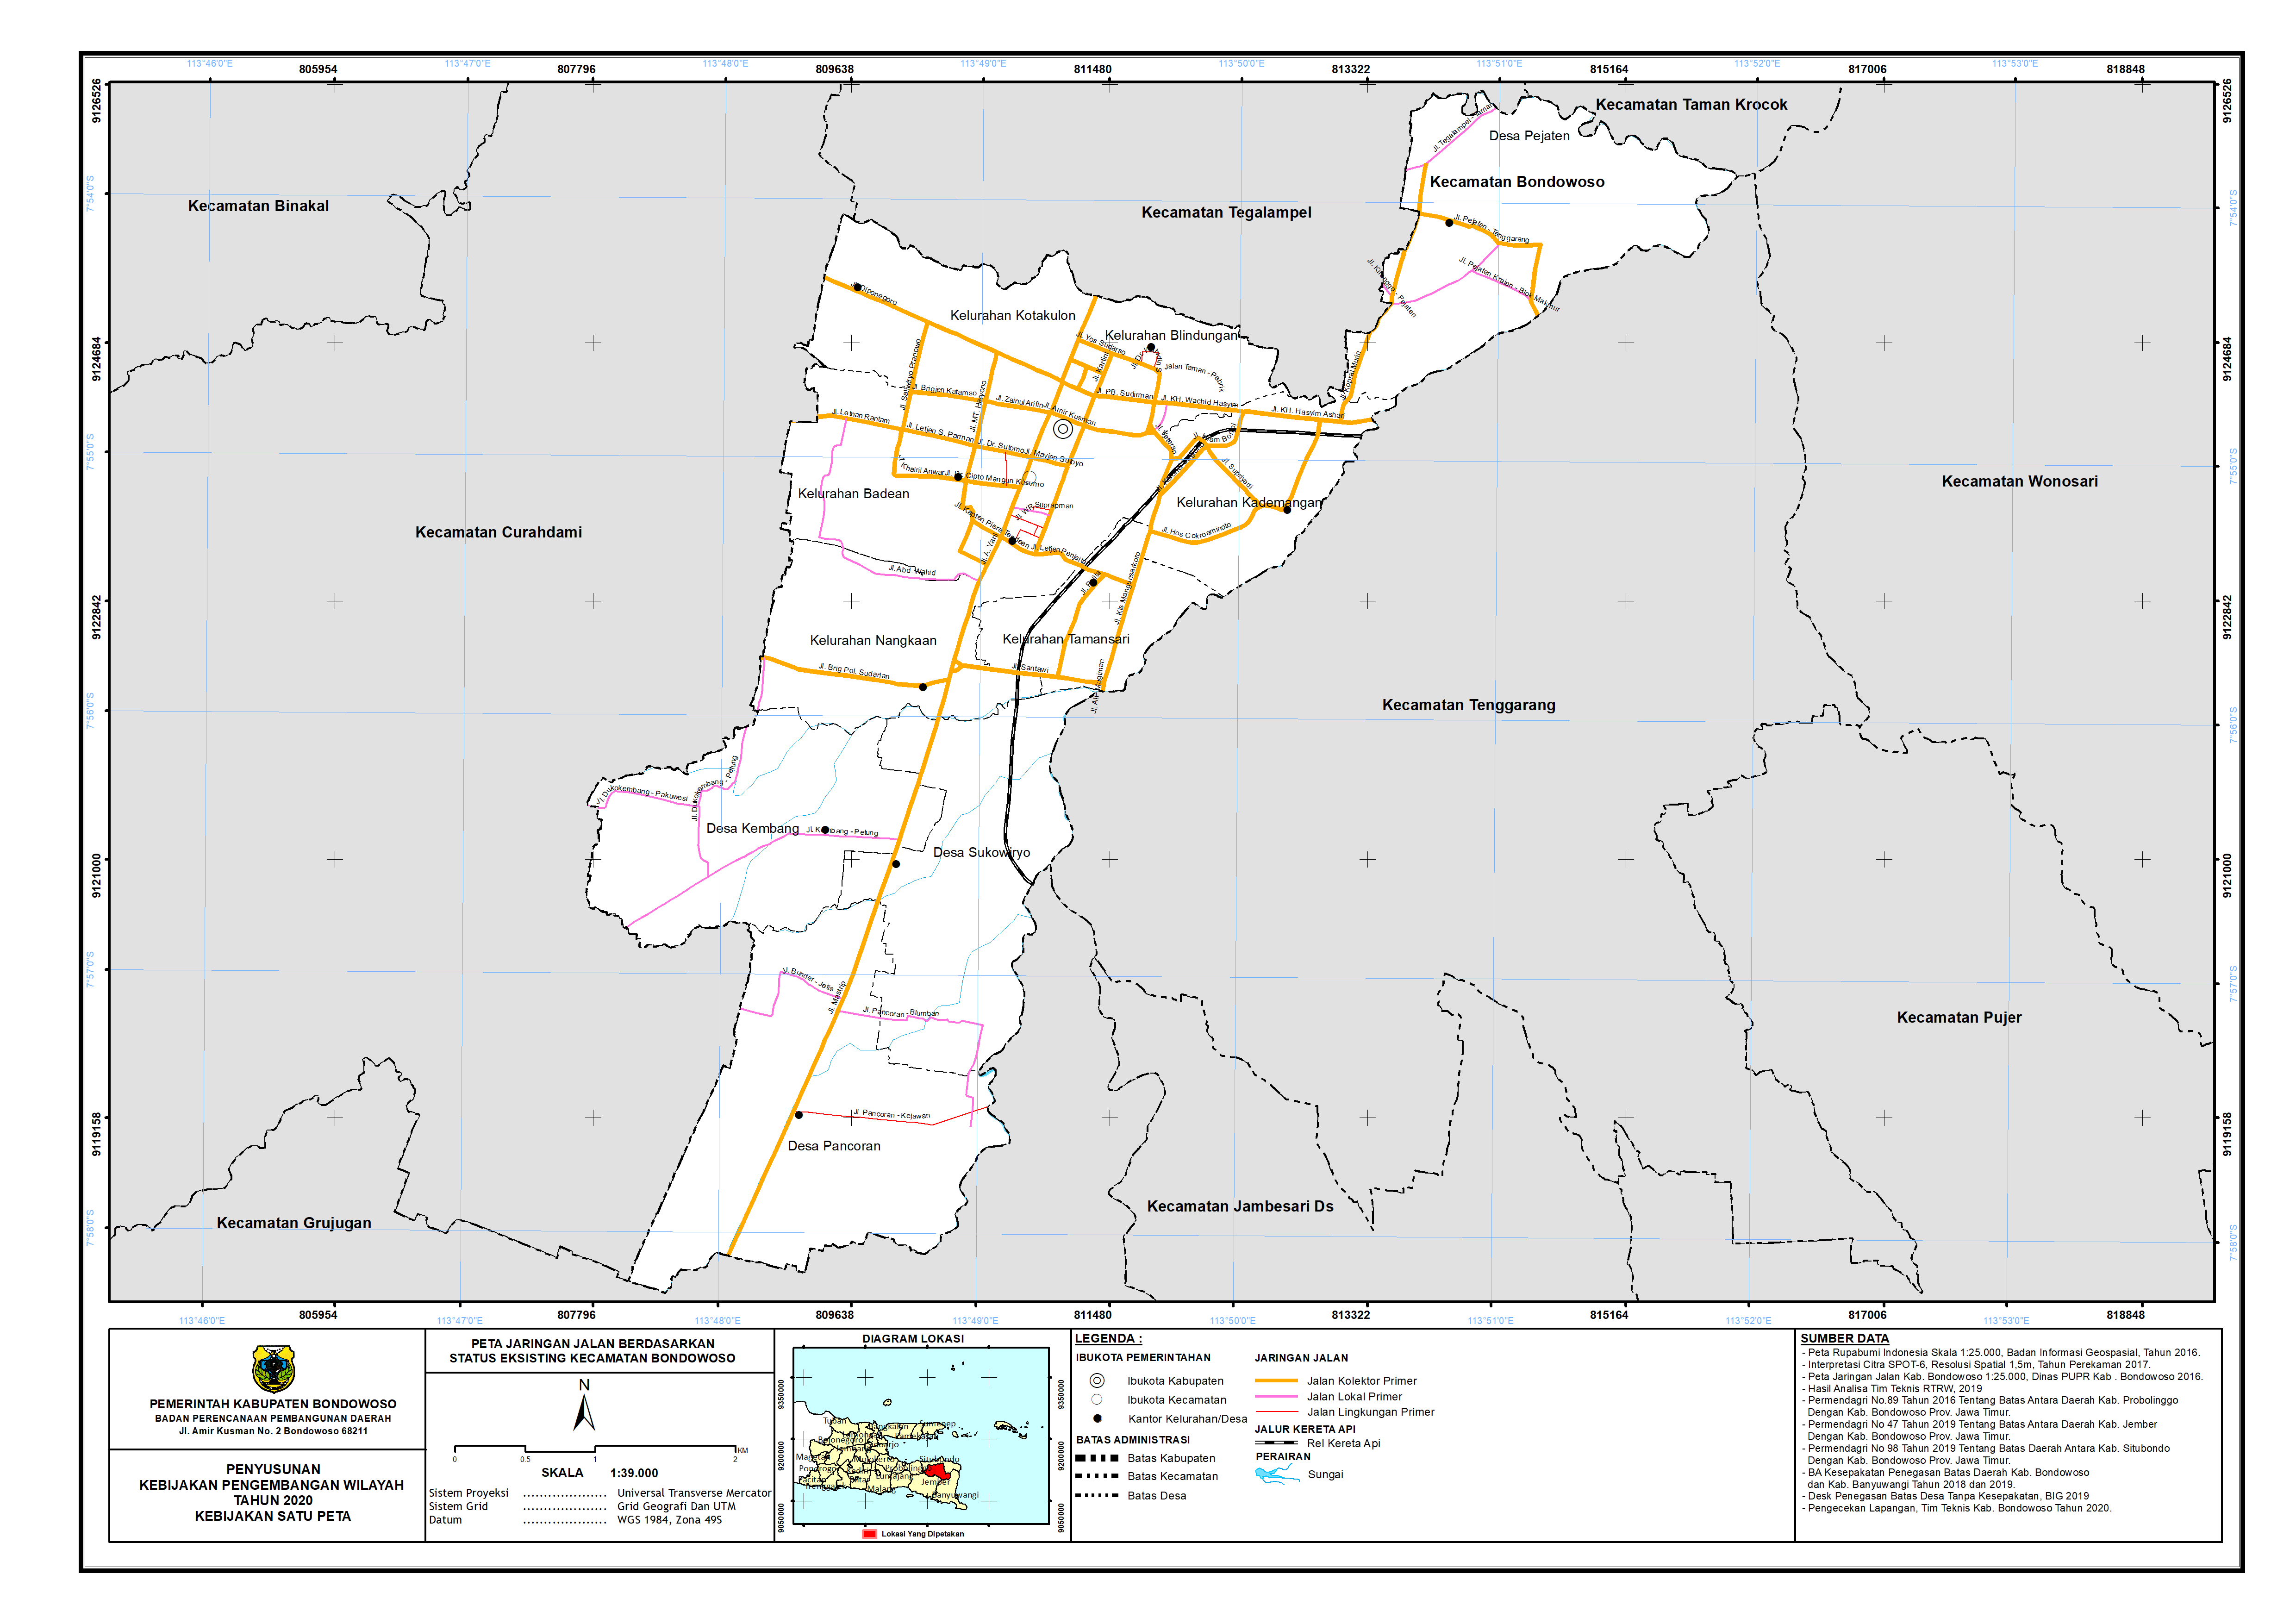 Peta Jaringan Jalan Berdasarkan Status Eksisting Kecamatan Bondowoso.png